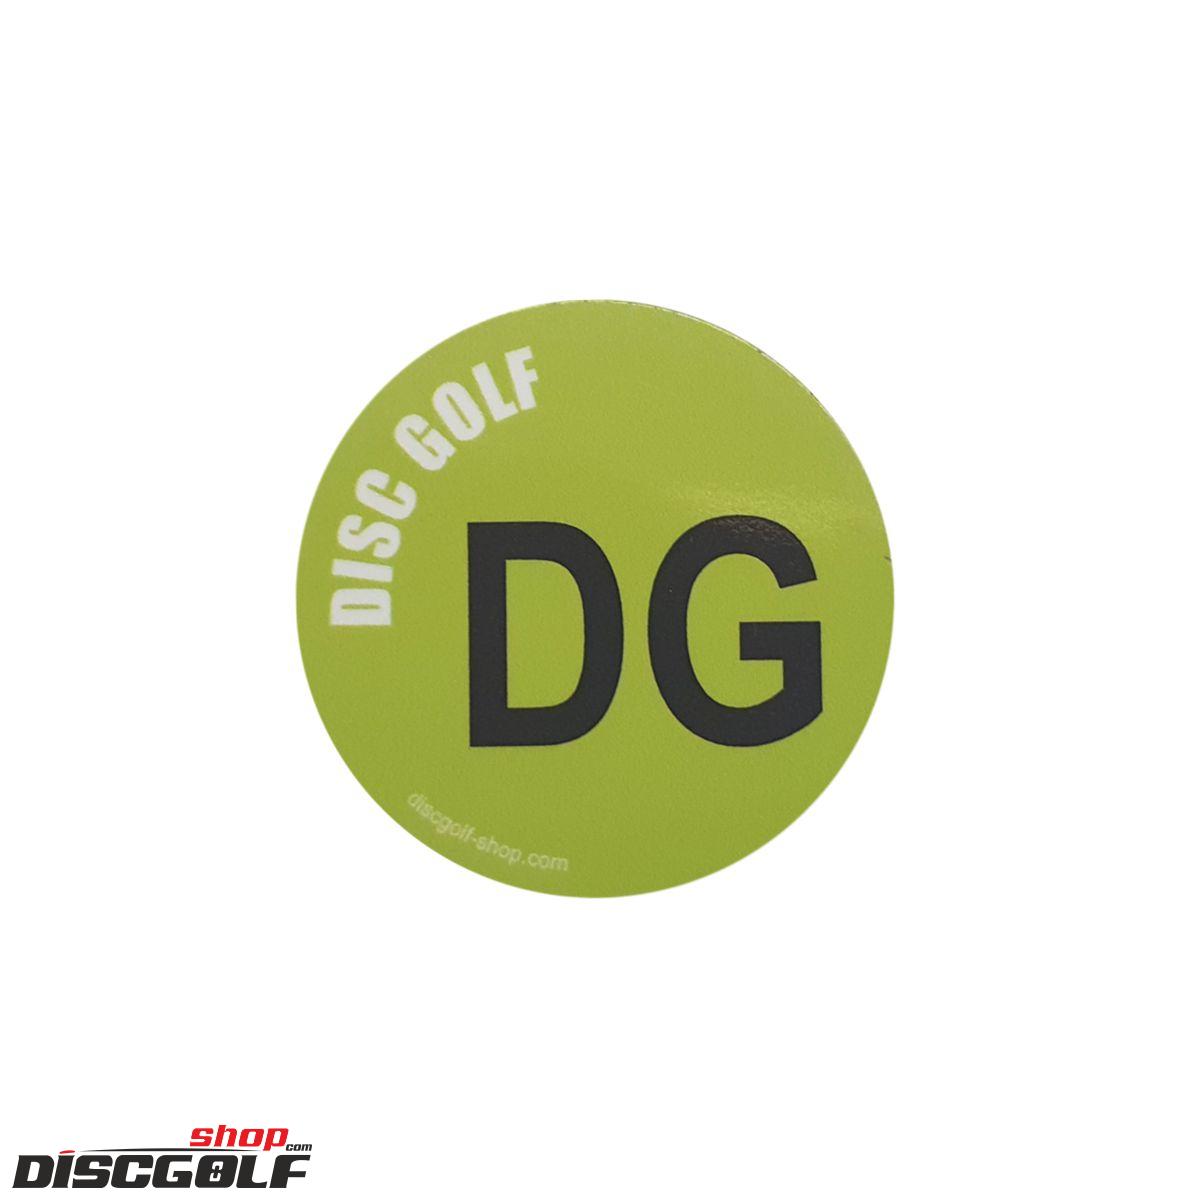 Samolepka "Discgolf DG" (discgolf)